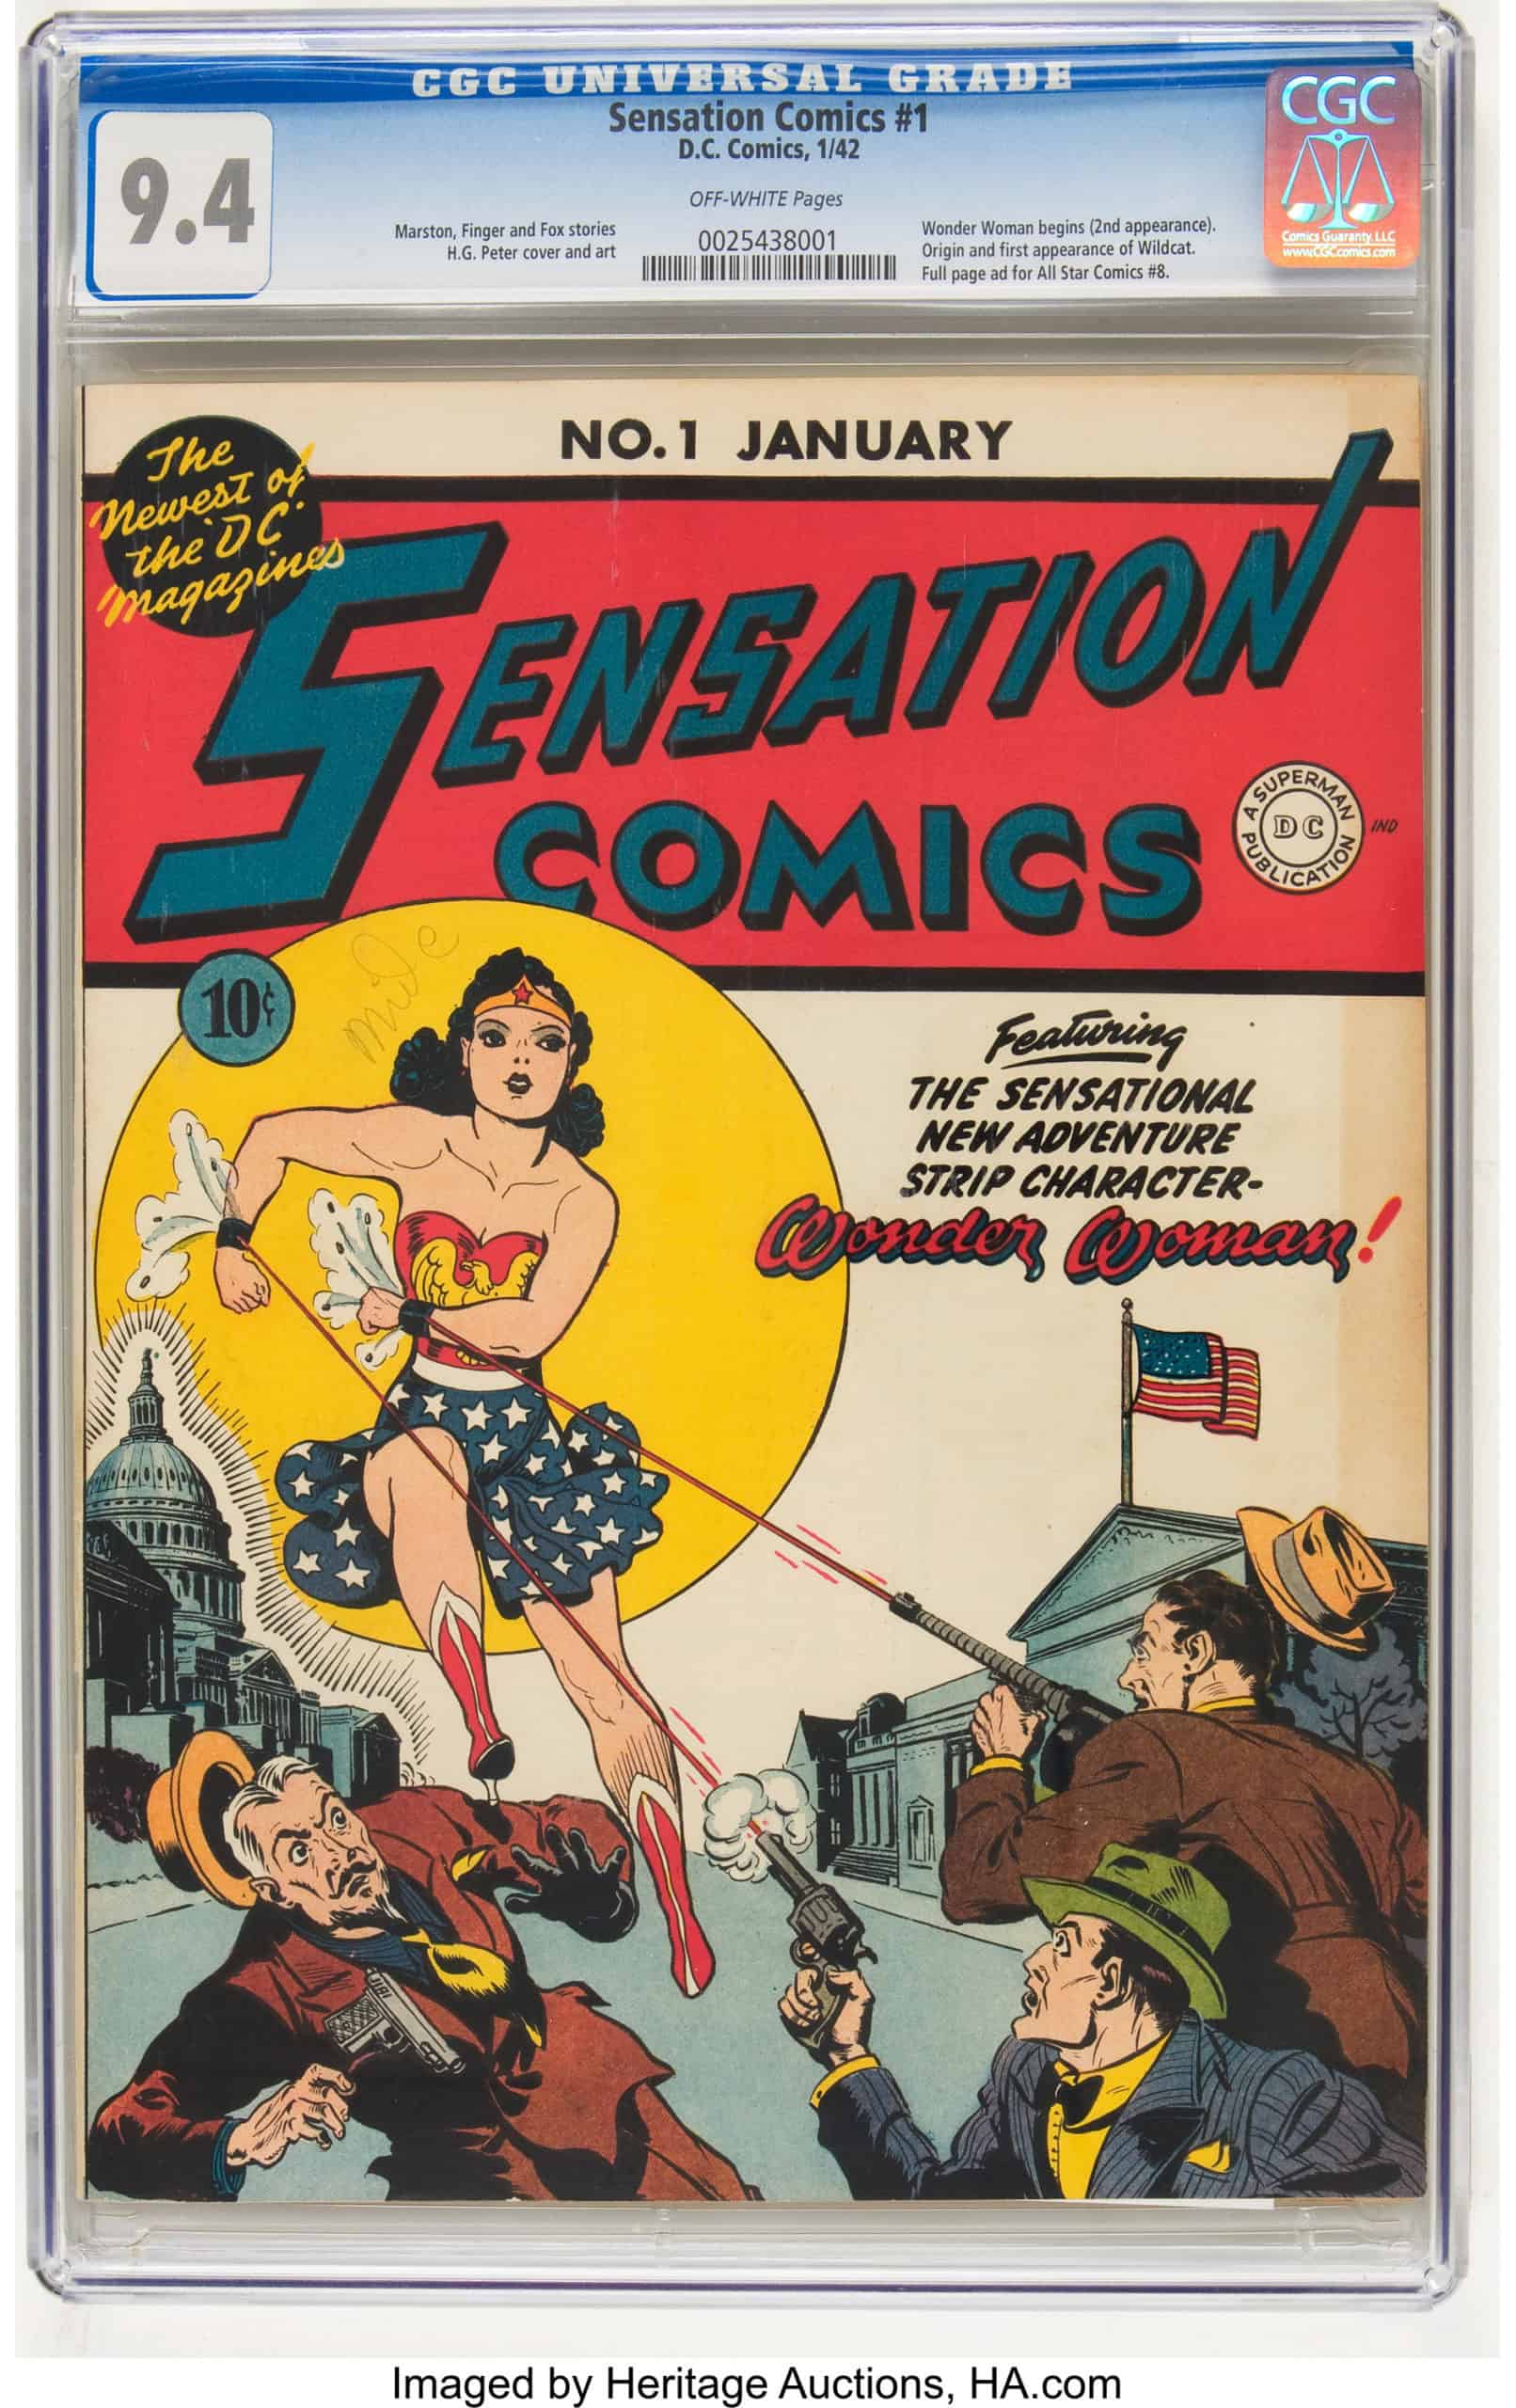 Sensation Comics No. 1